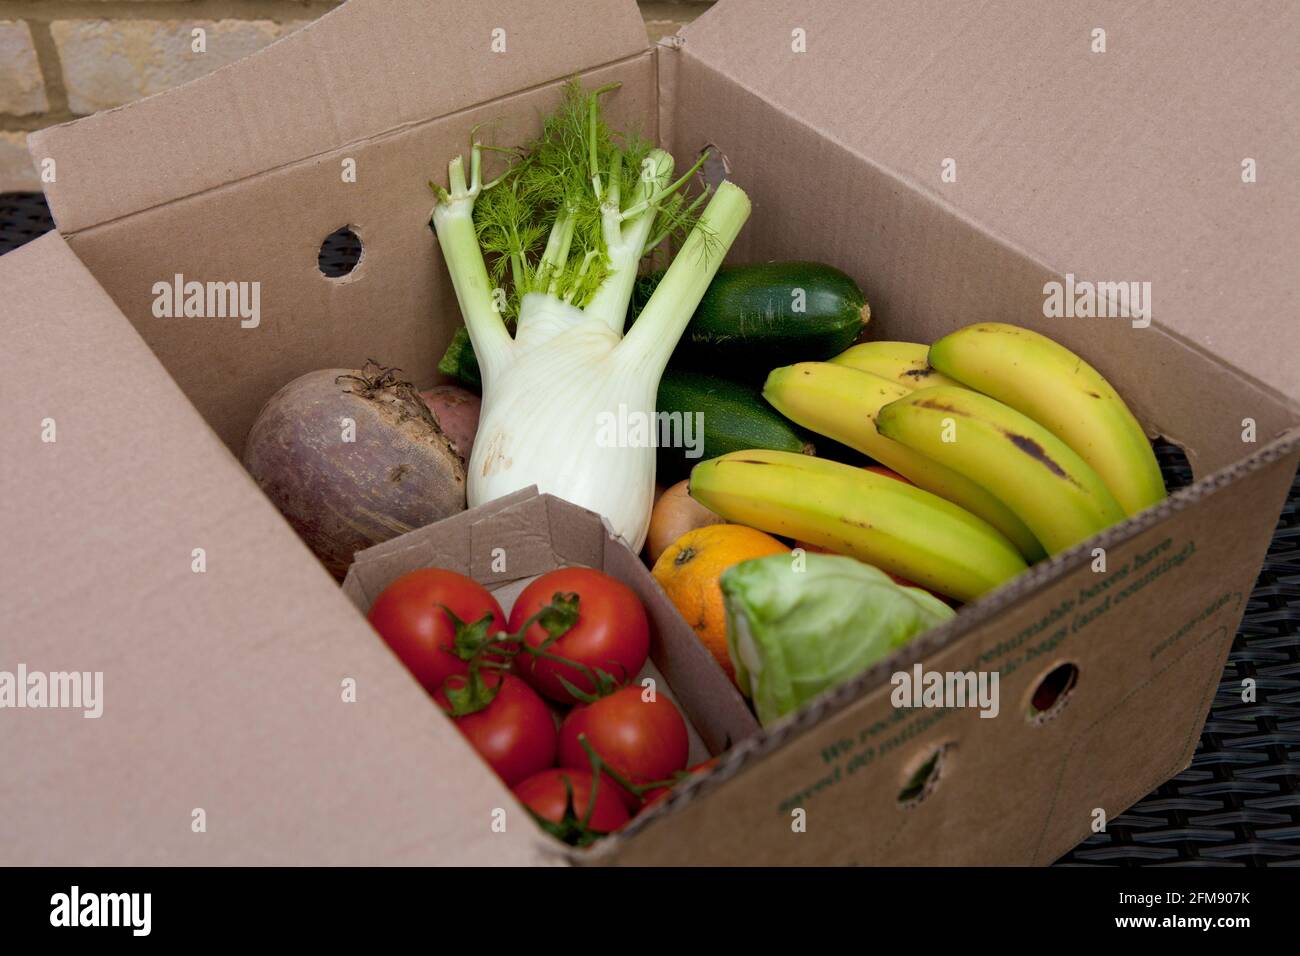 All'interno della scatola: Una consegna di verdura biologica contenente frutta e verdura confezionata in una scatola restituibile/riutilizzabile di Abel e Cole. Senza plastica. Foto Stock